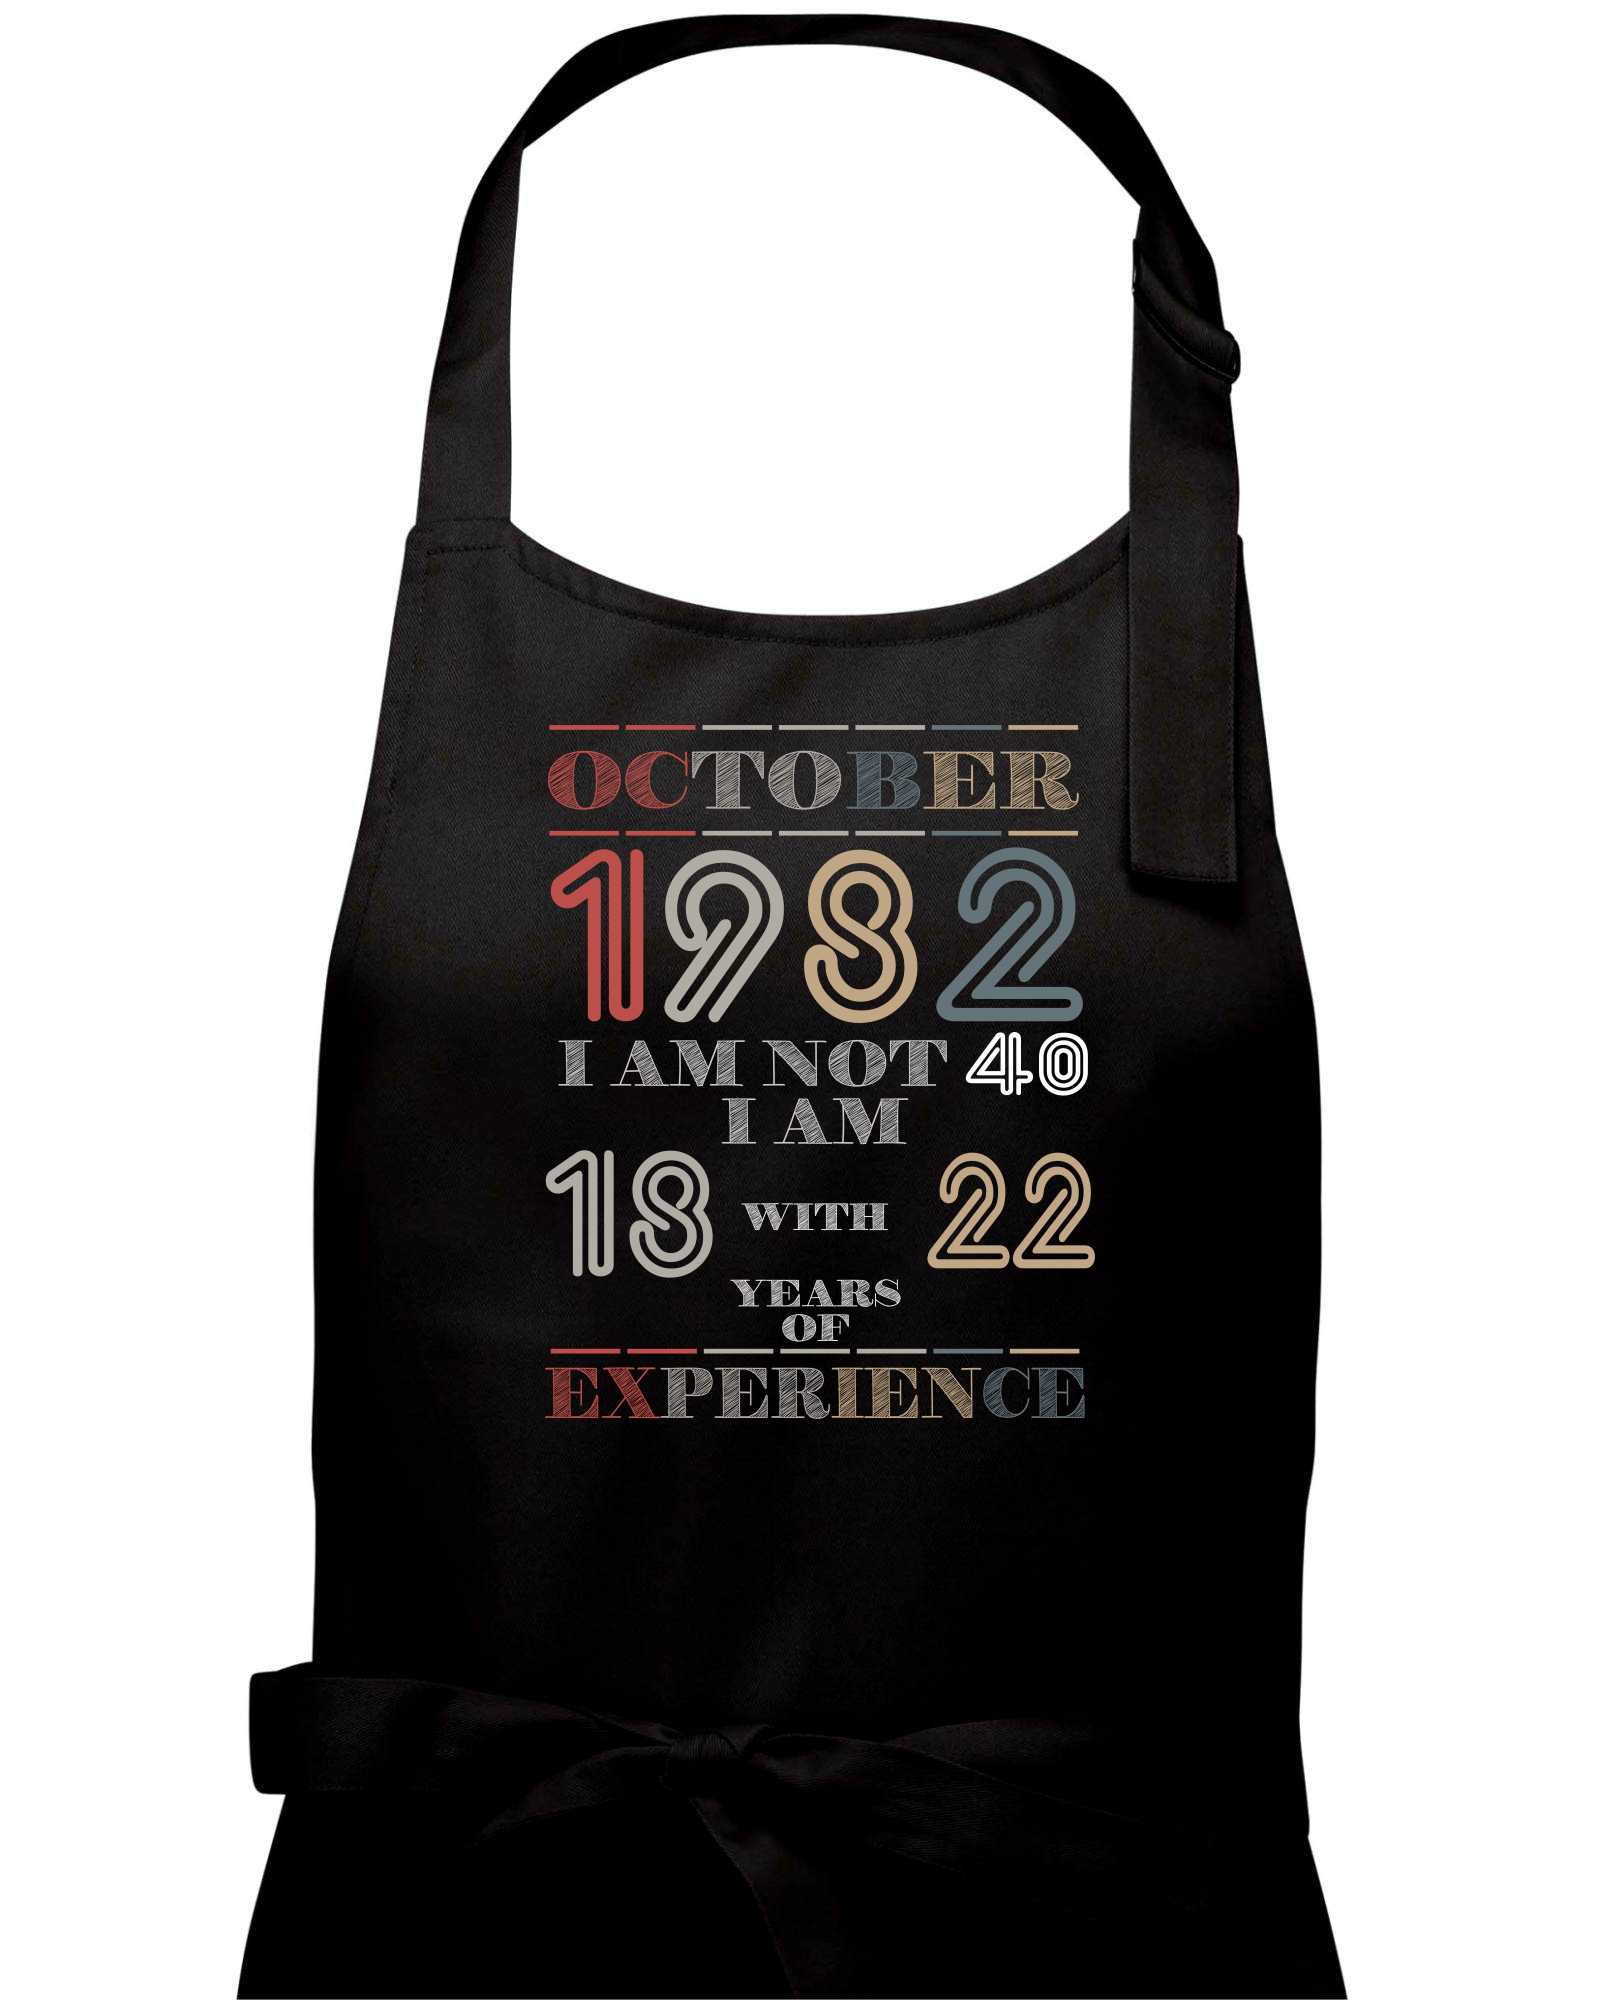 Narozeniny experience 1982 October - Zástěra na vaření